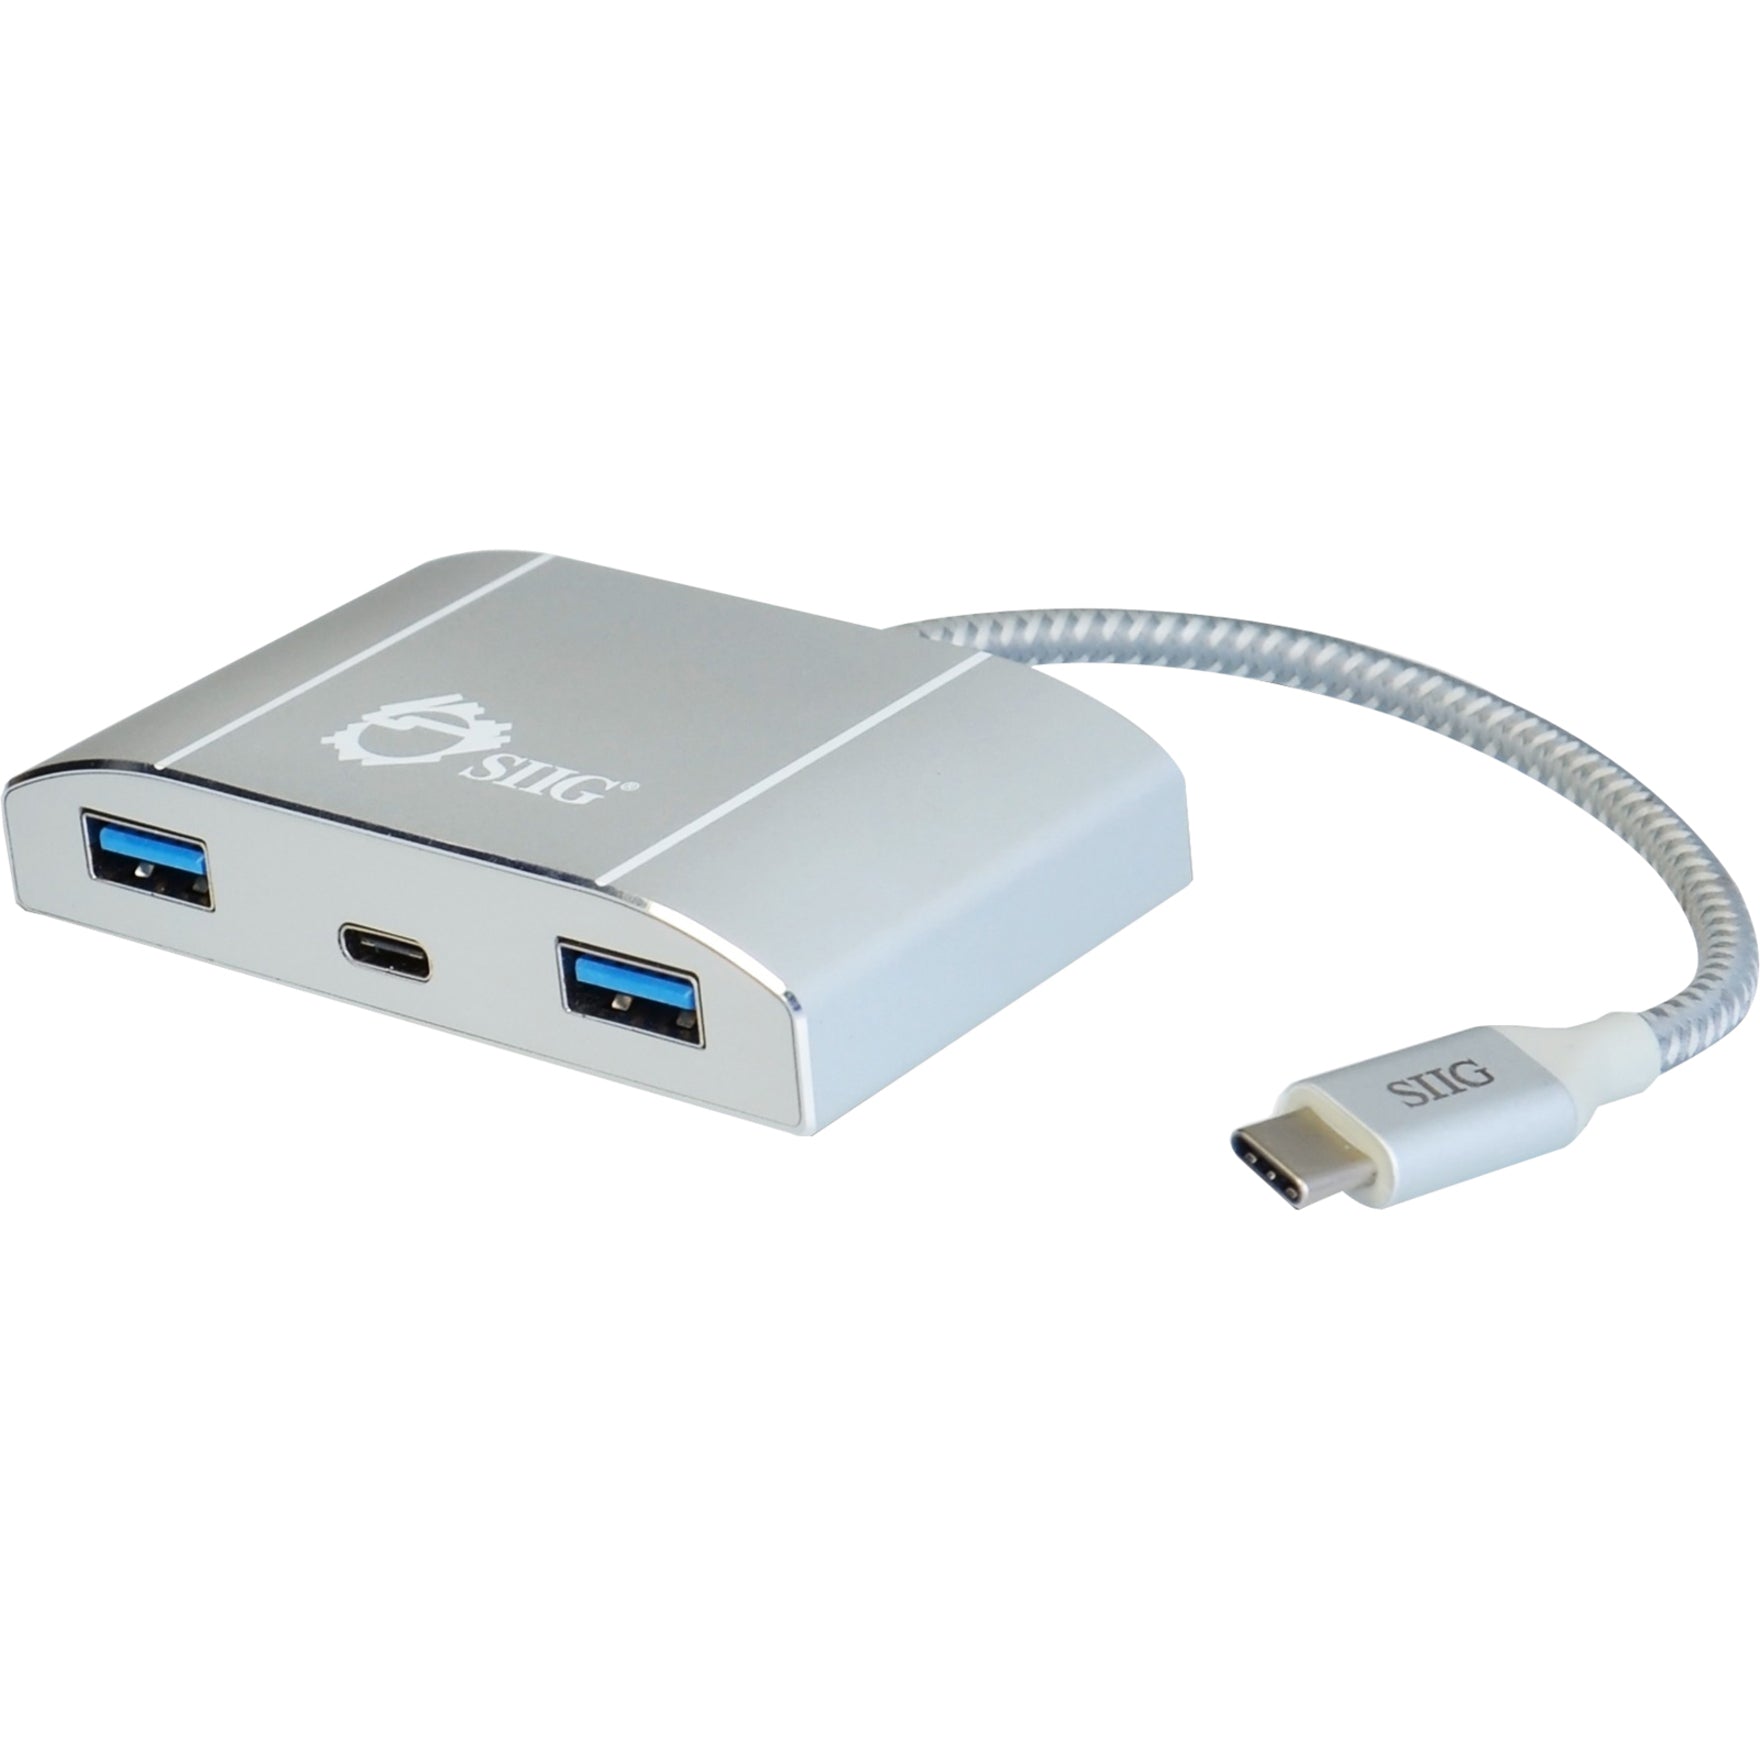 SIIG JU-H30C11-S1 USB-C a 4 puertos USB 3.0 Hub con Carga PD - Aumenta Opciones de Conectividad Marca: SIIG Traducir Marca: SIIG - Traducción: SIIG